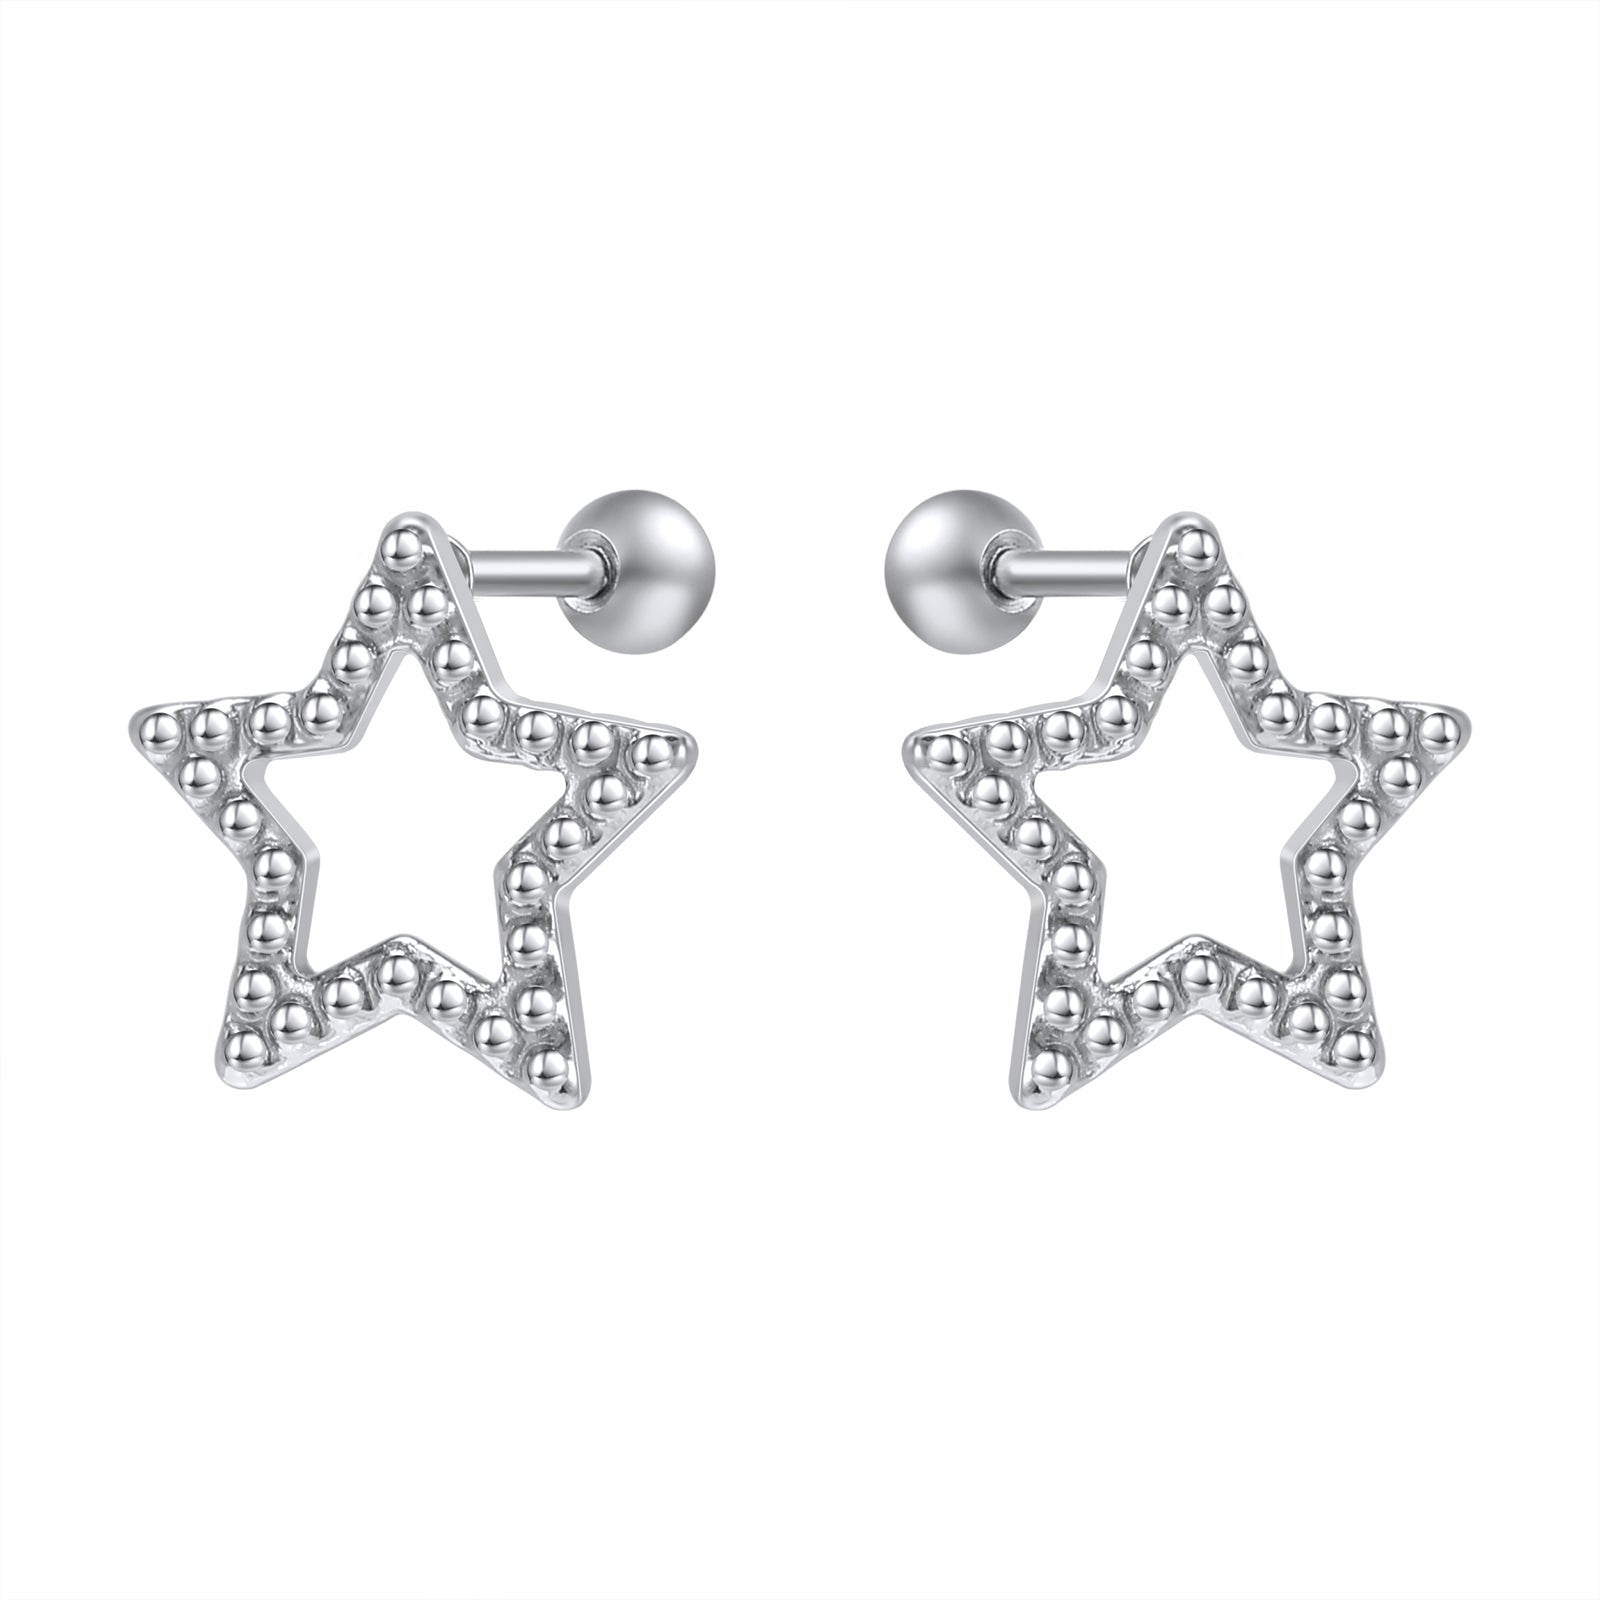 20g-star-stud-earring-ball-ear-stud-helix-conch-piercing-earring